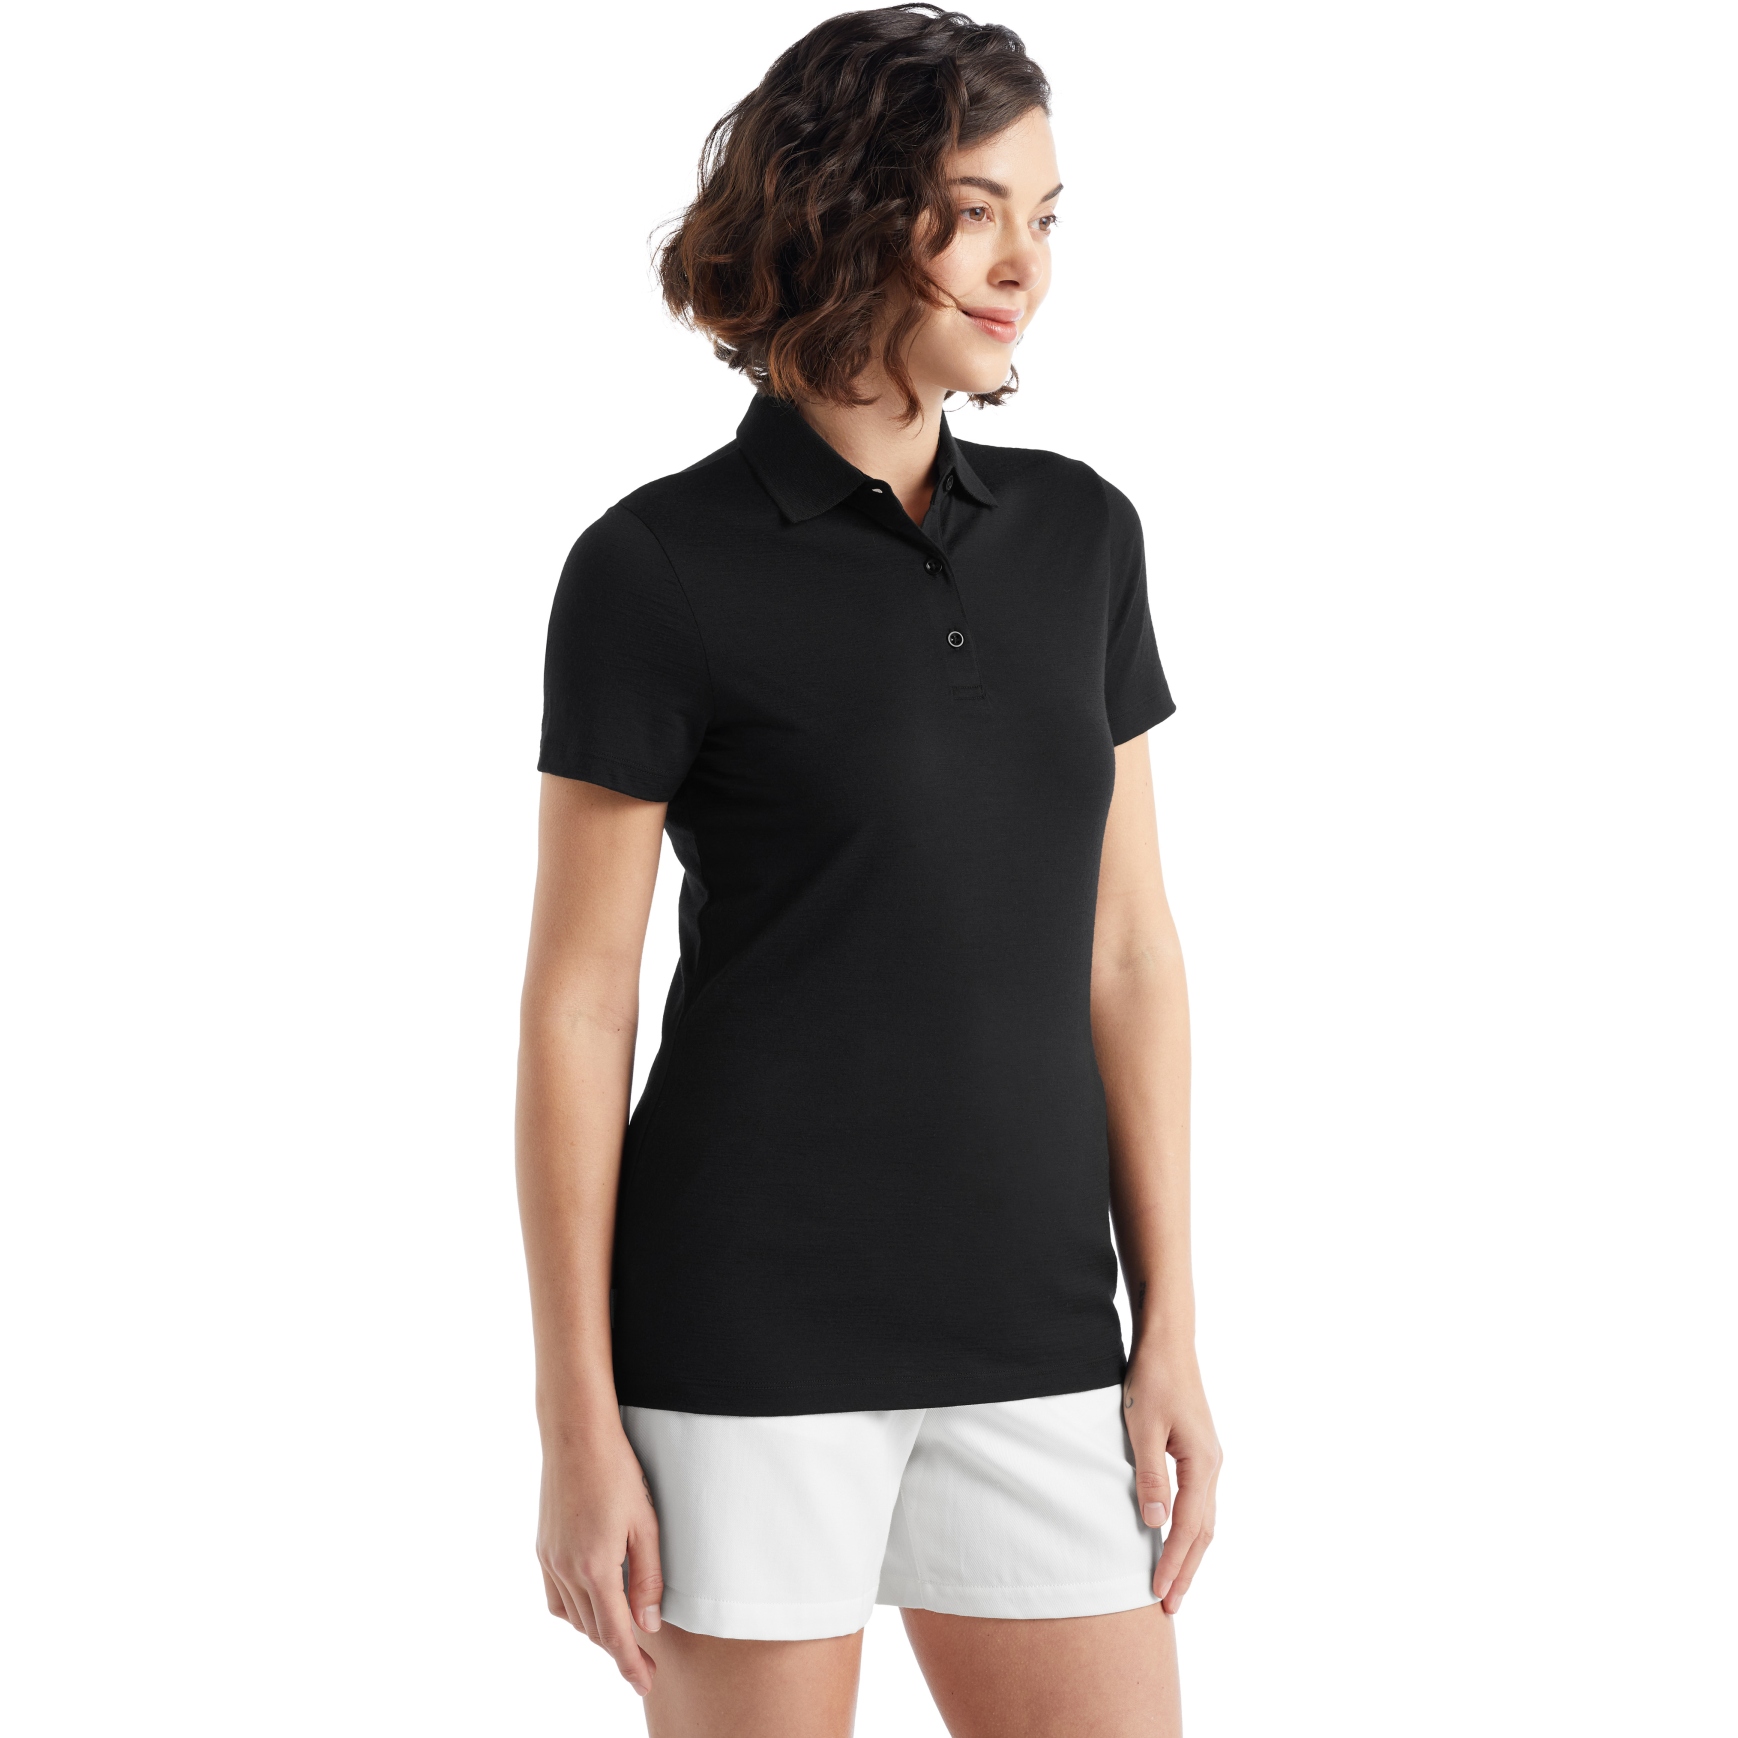 Produktbild von Icebreaker Tech Lite II Damen Polo-Shirt - Schwarz